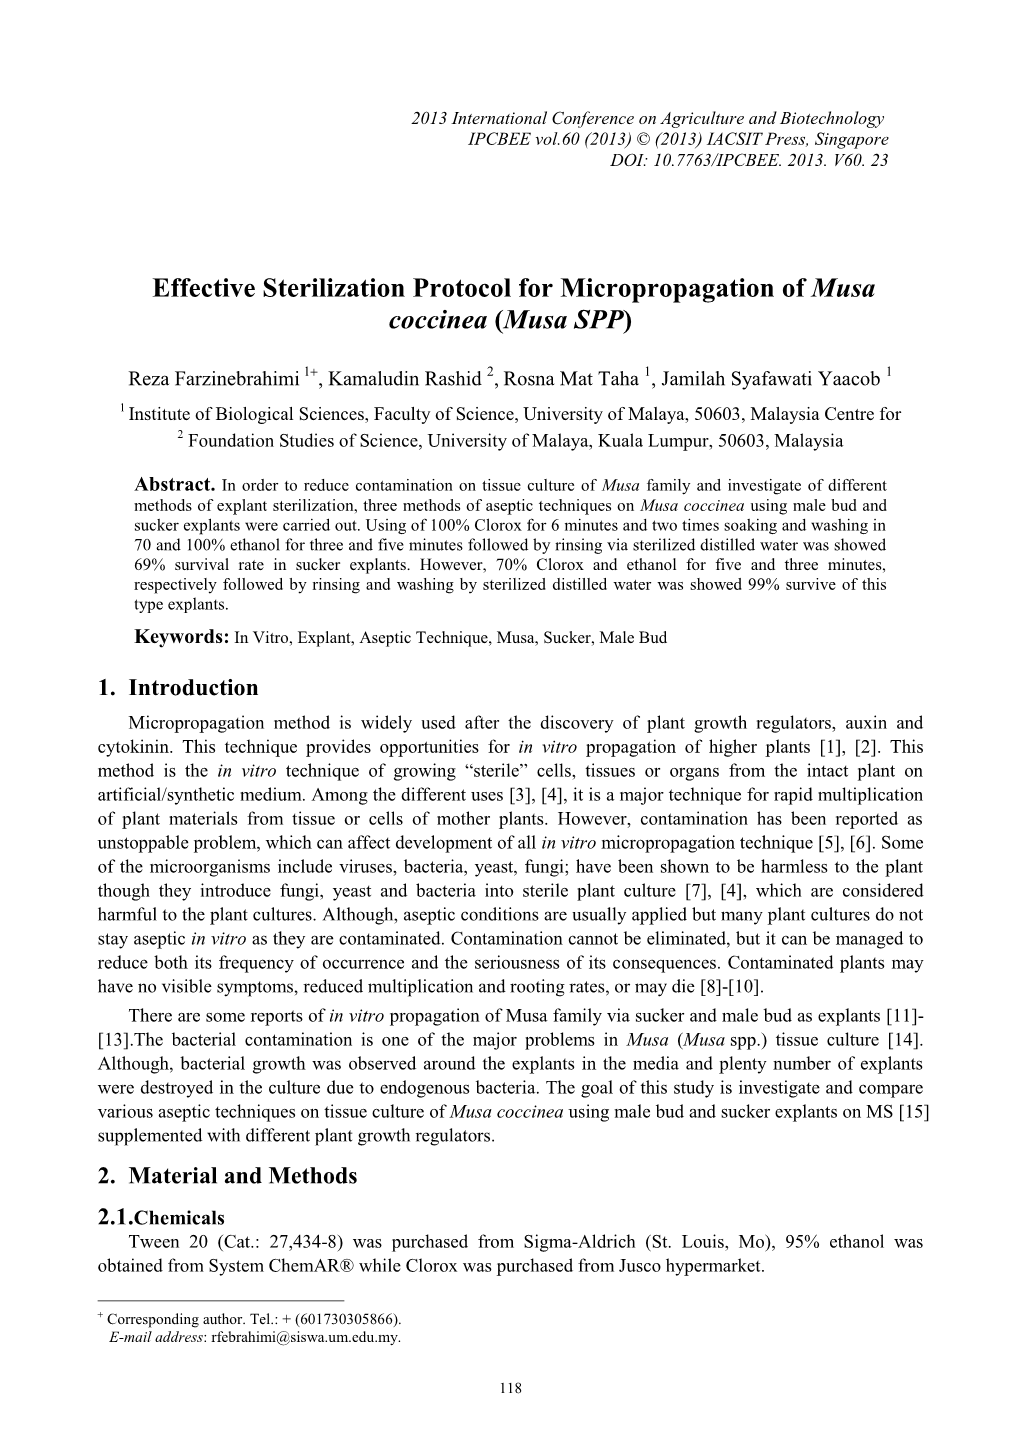 Effective Sterilization Protocol for Micropropagation of Musa Coccinea (Musa SPP)